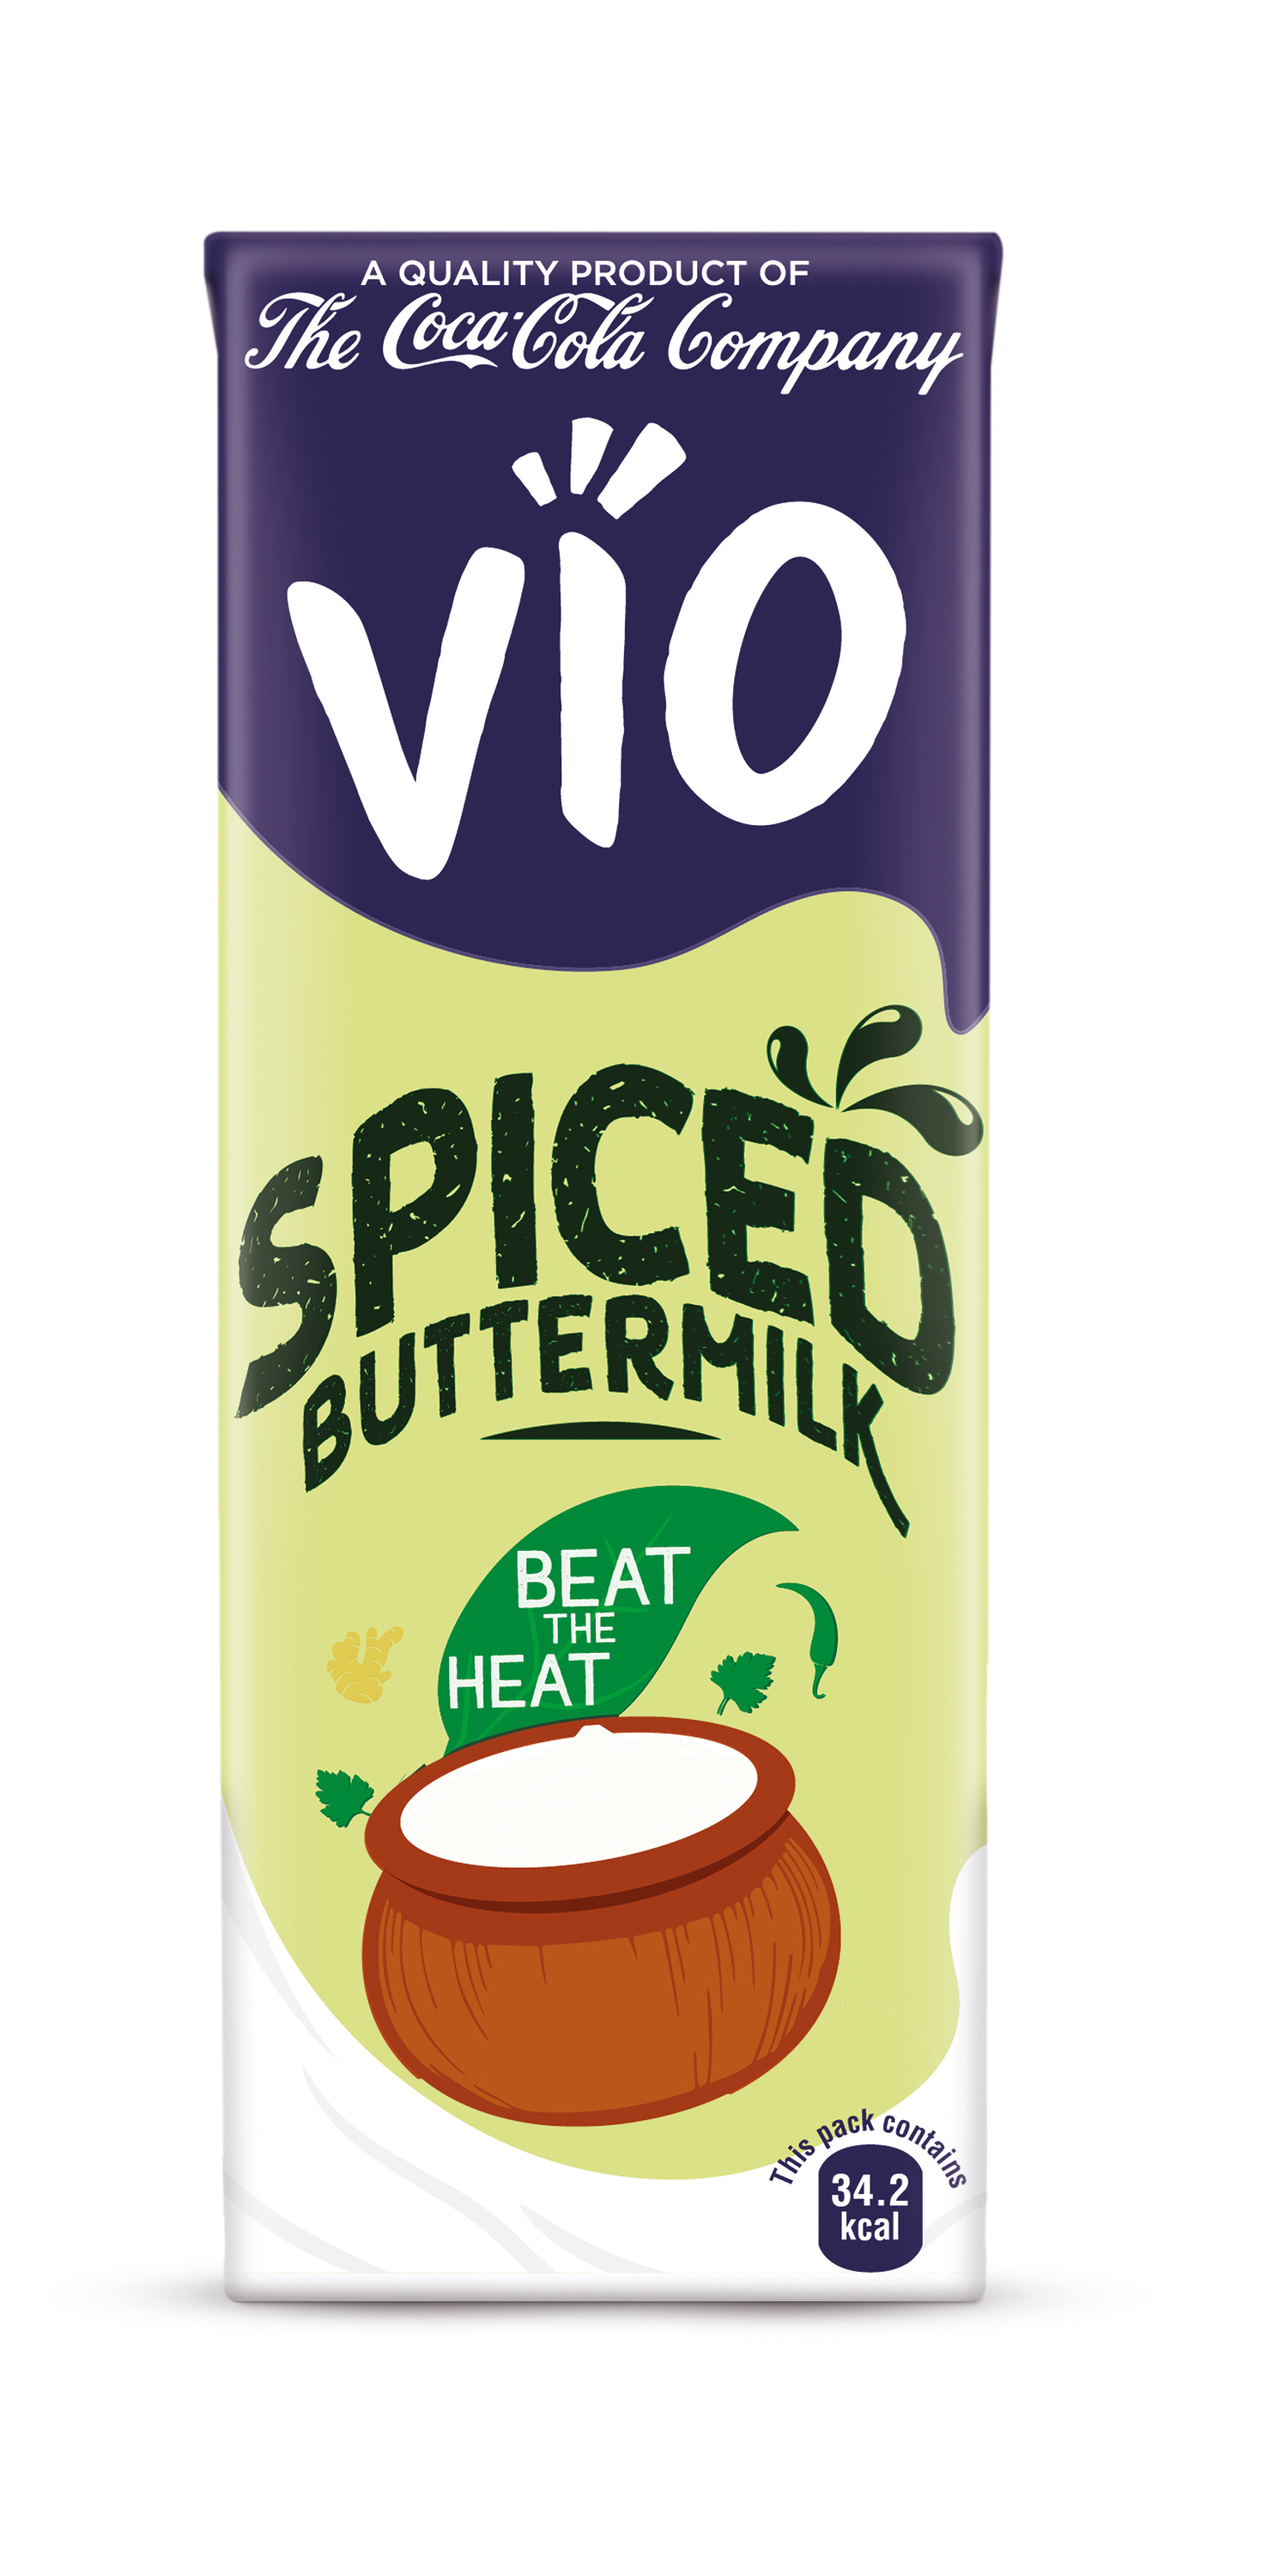 Vio_Butter_Milk_180ml_Tetra_pack